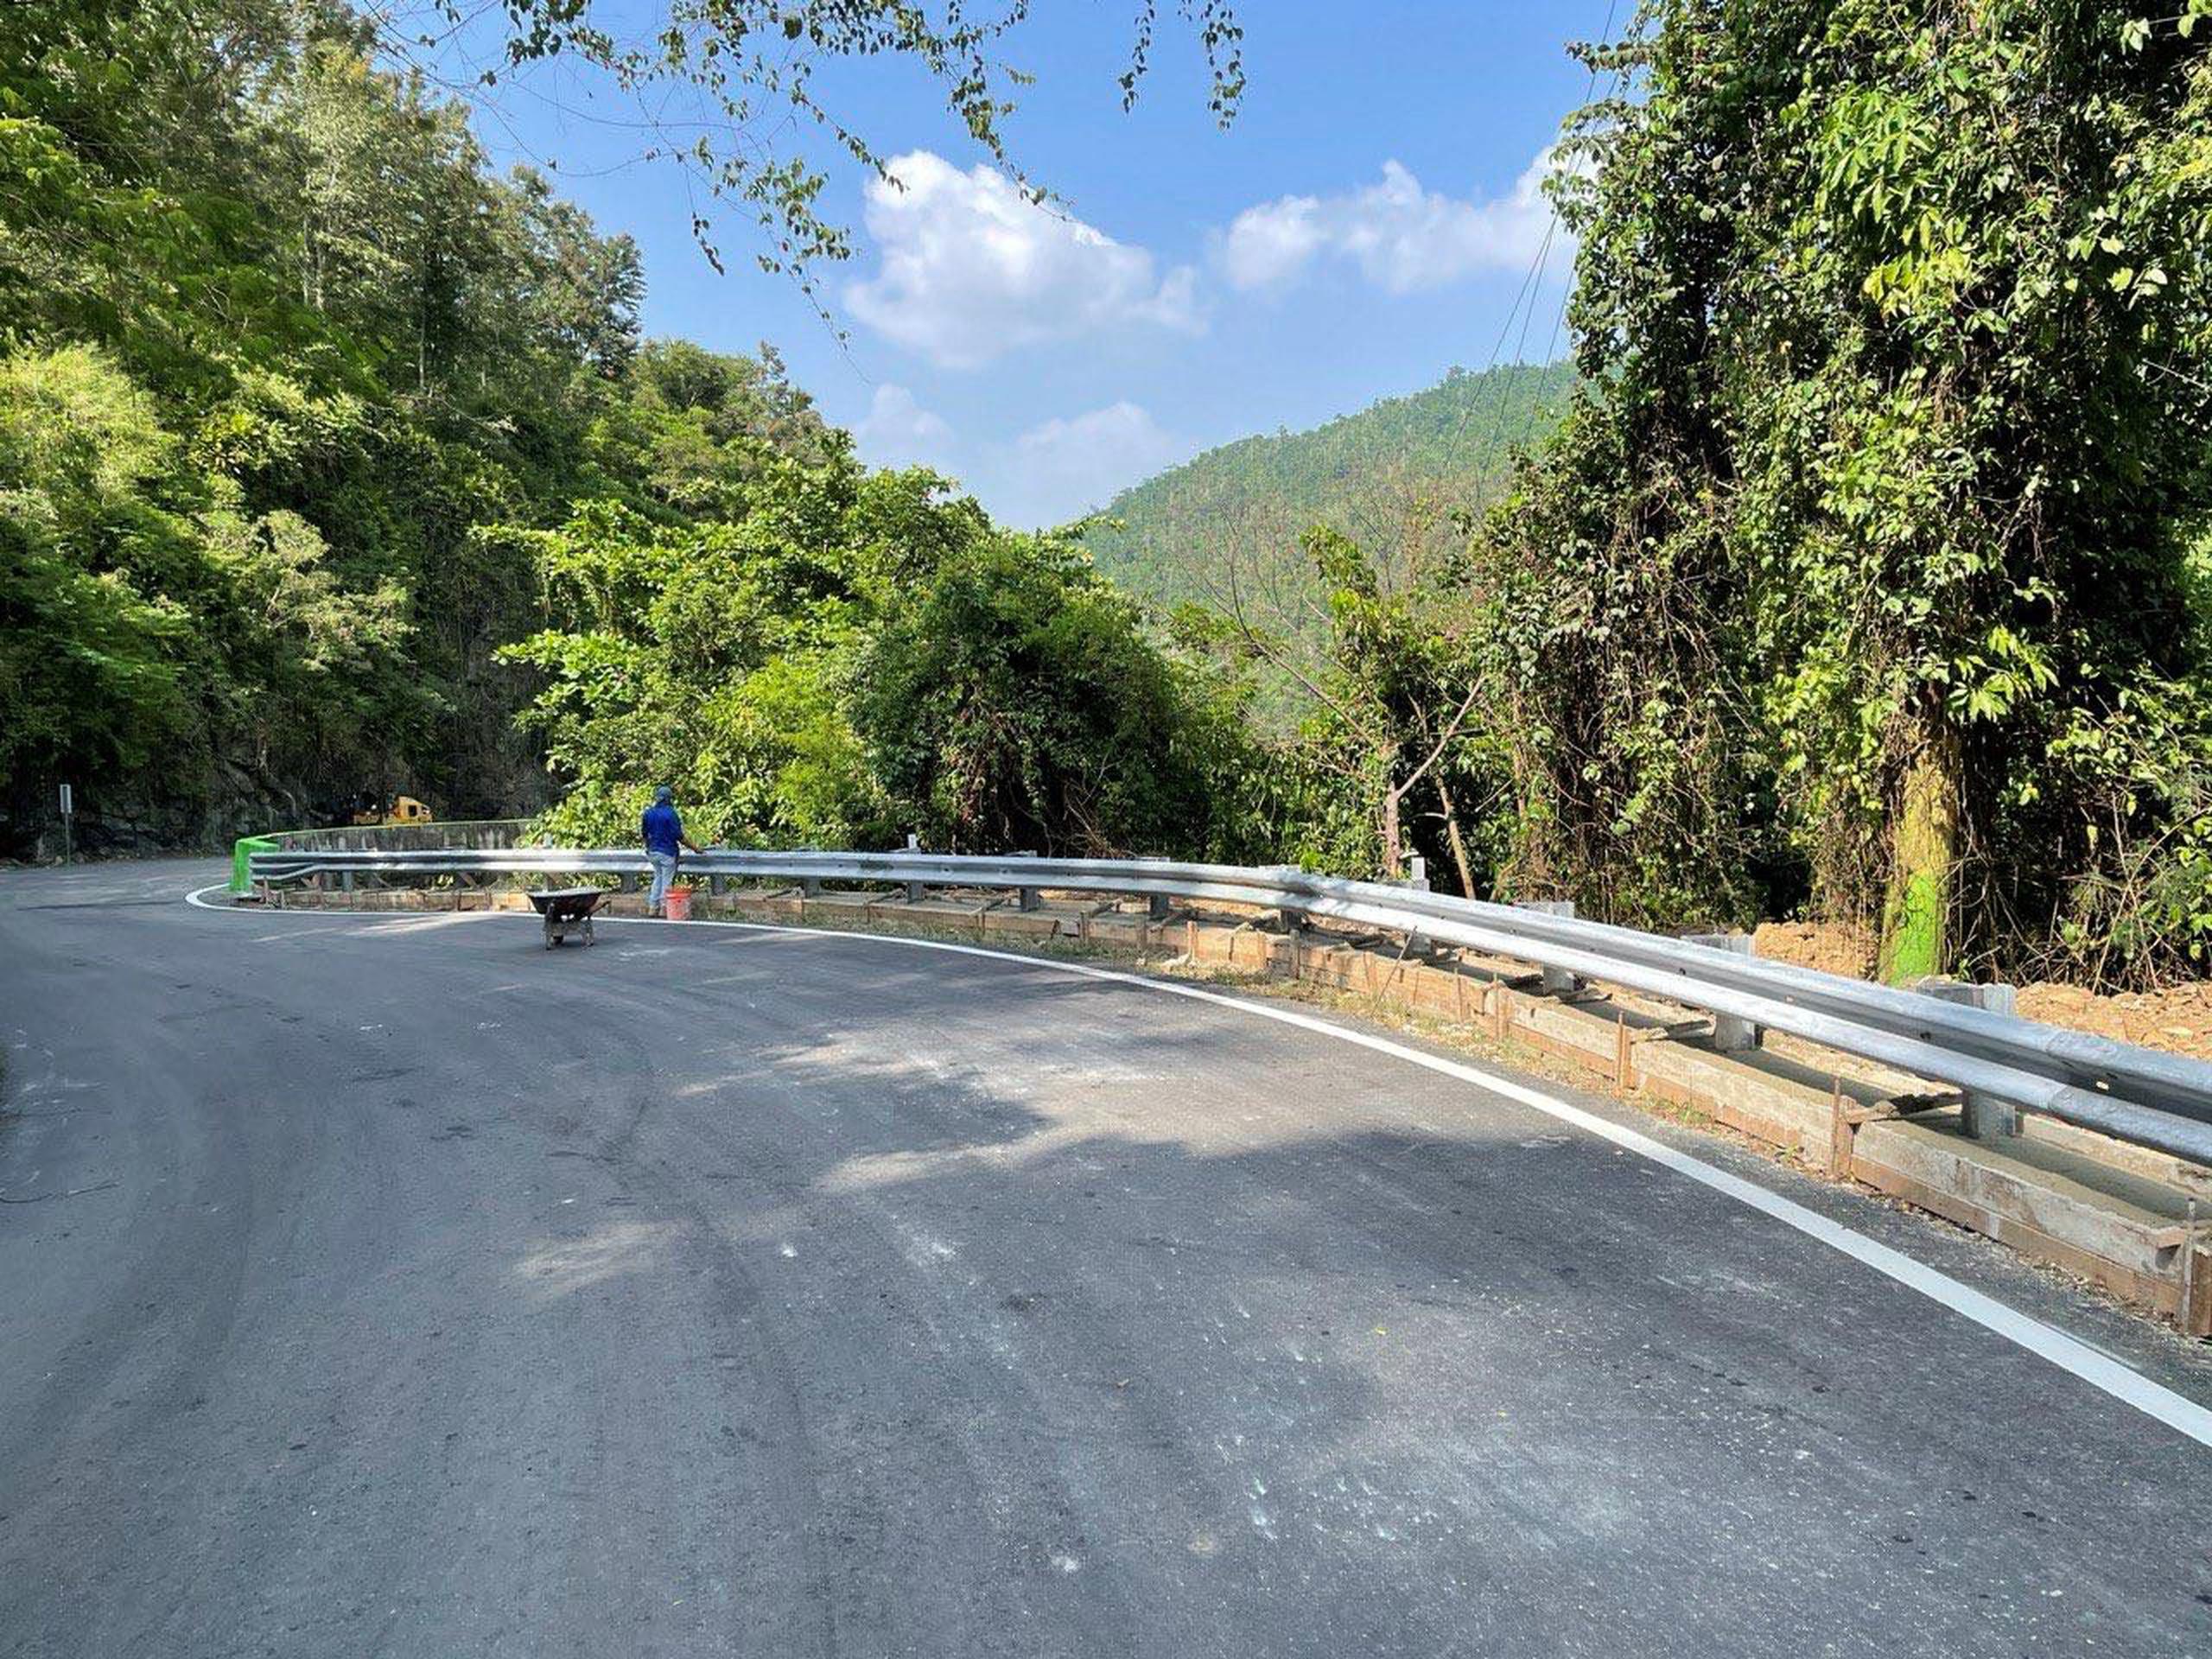 Las agencias responsables del mantenimiento de las carreteras de la isla informaron que la ruta que sufrió daños tras los embates del huracán María estará abierta para los conductores nuevamente.